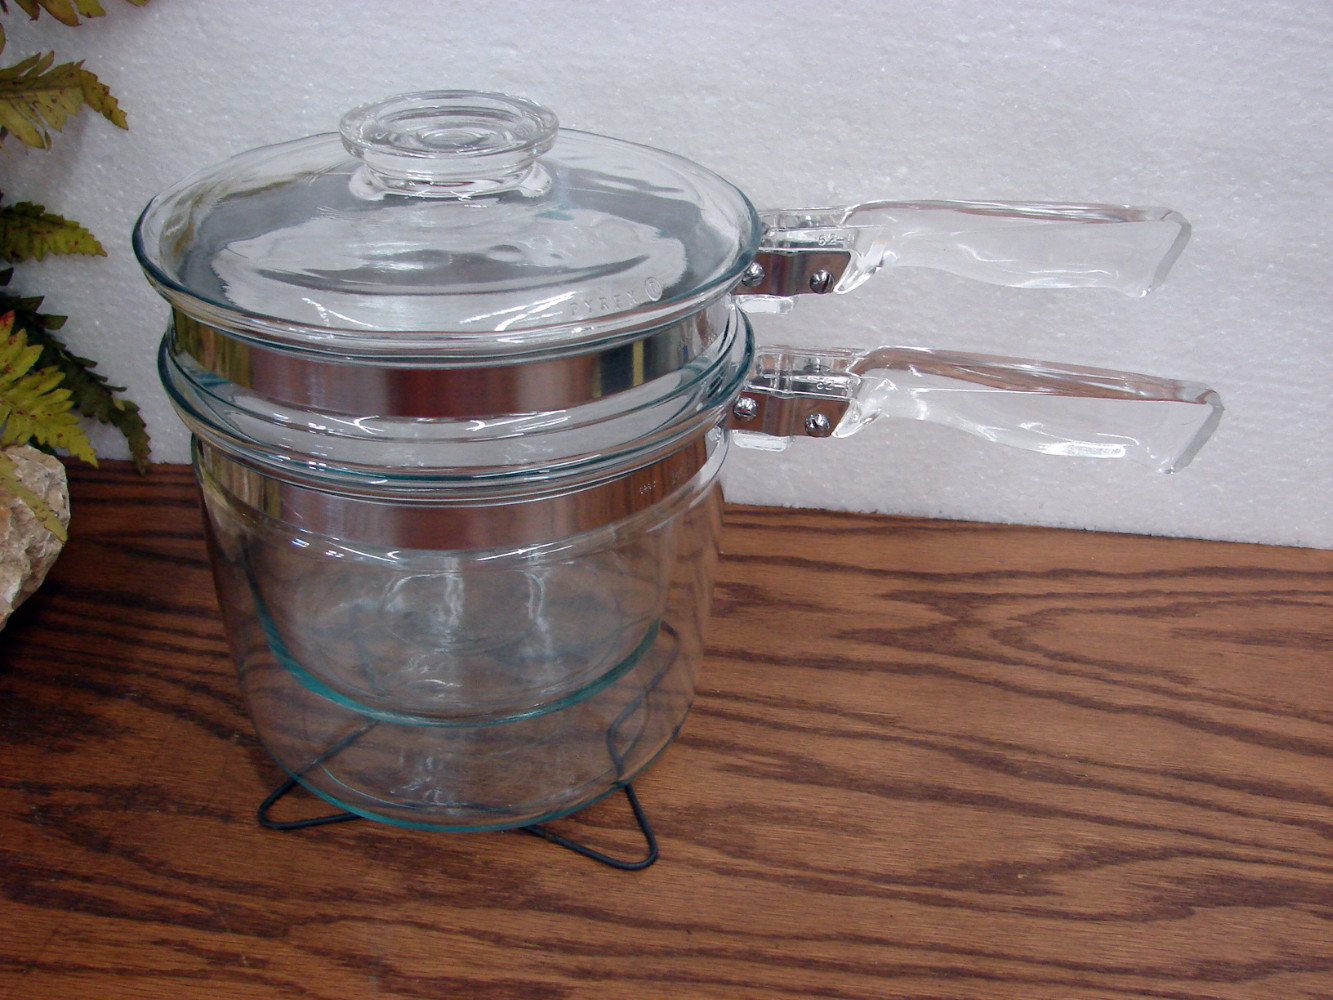 Vintage PYREX Flameware Glass Double Boiler Pot 1.5 Quart Pan